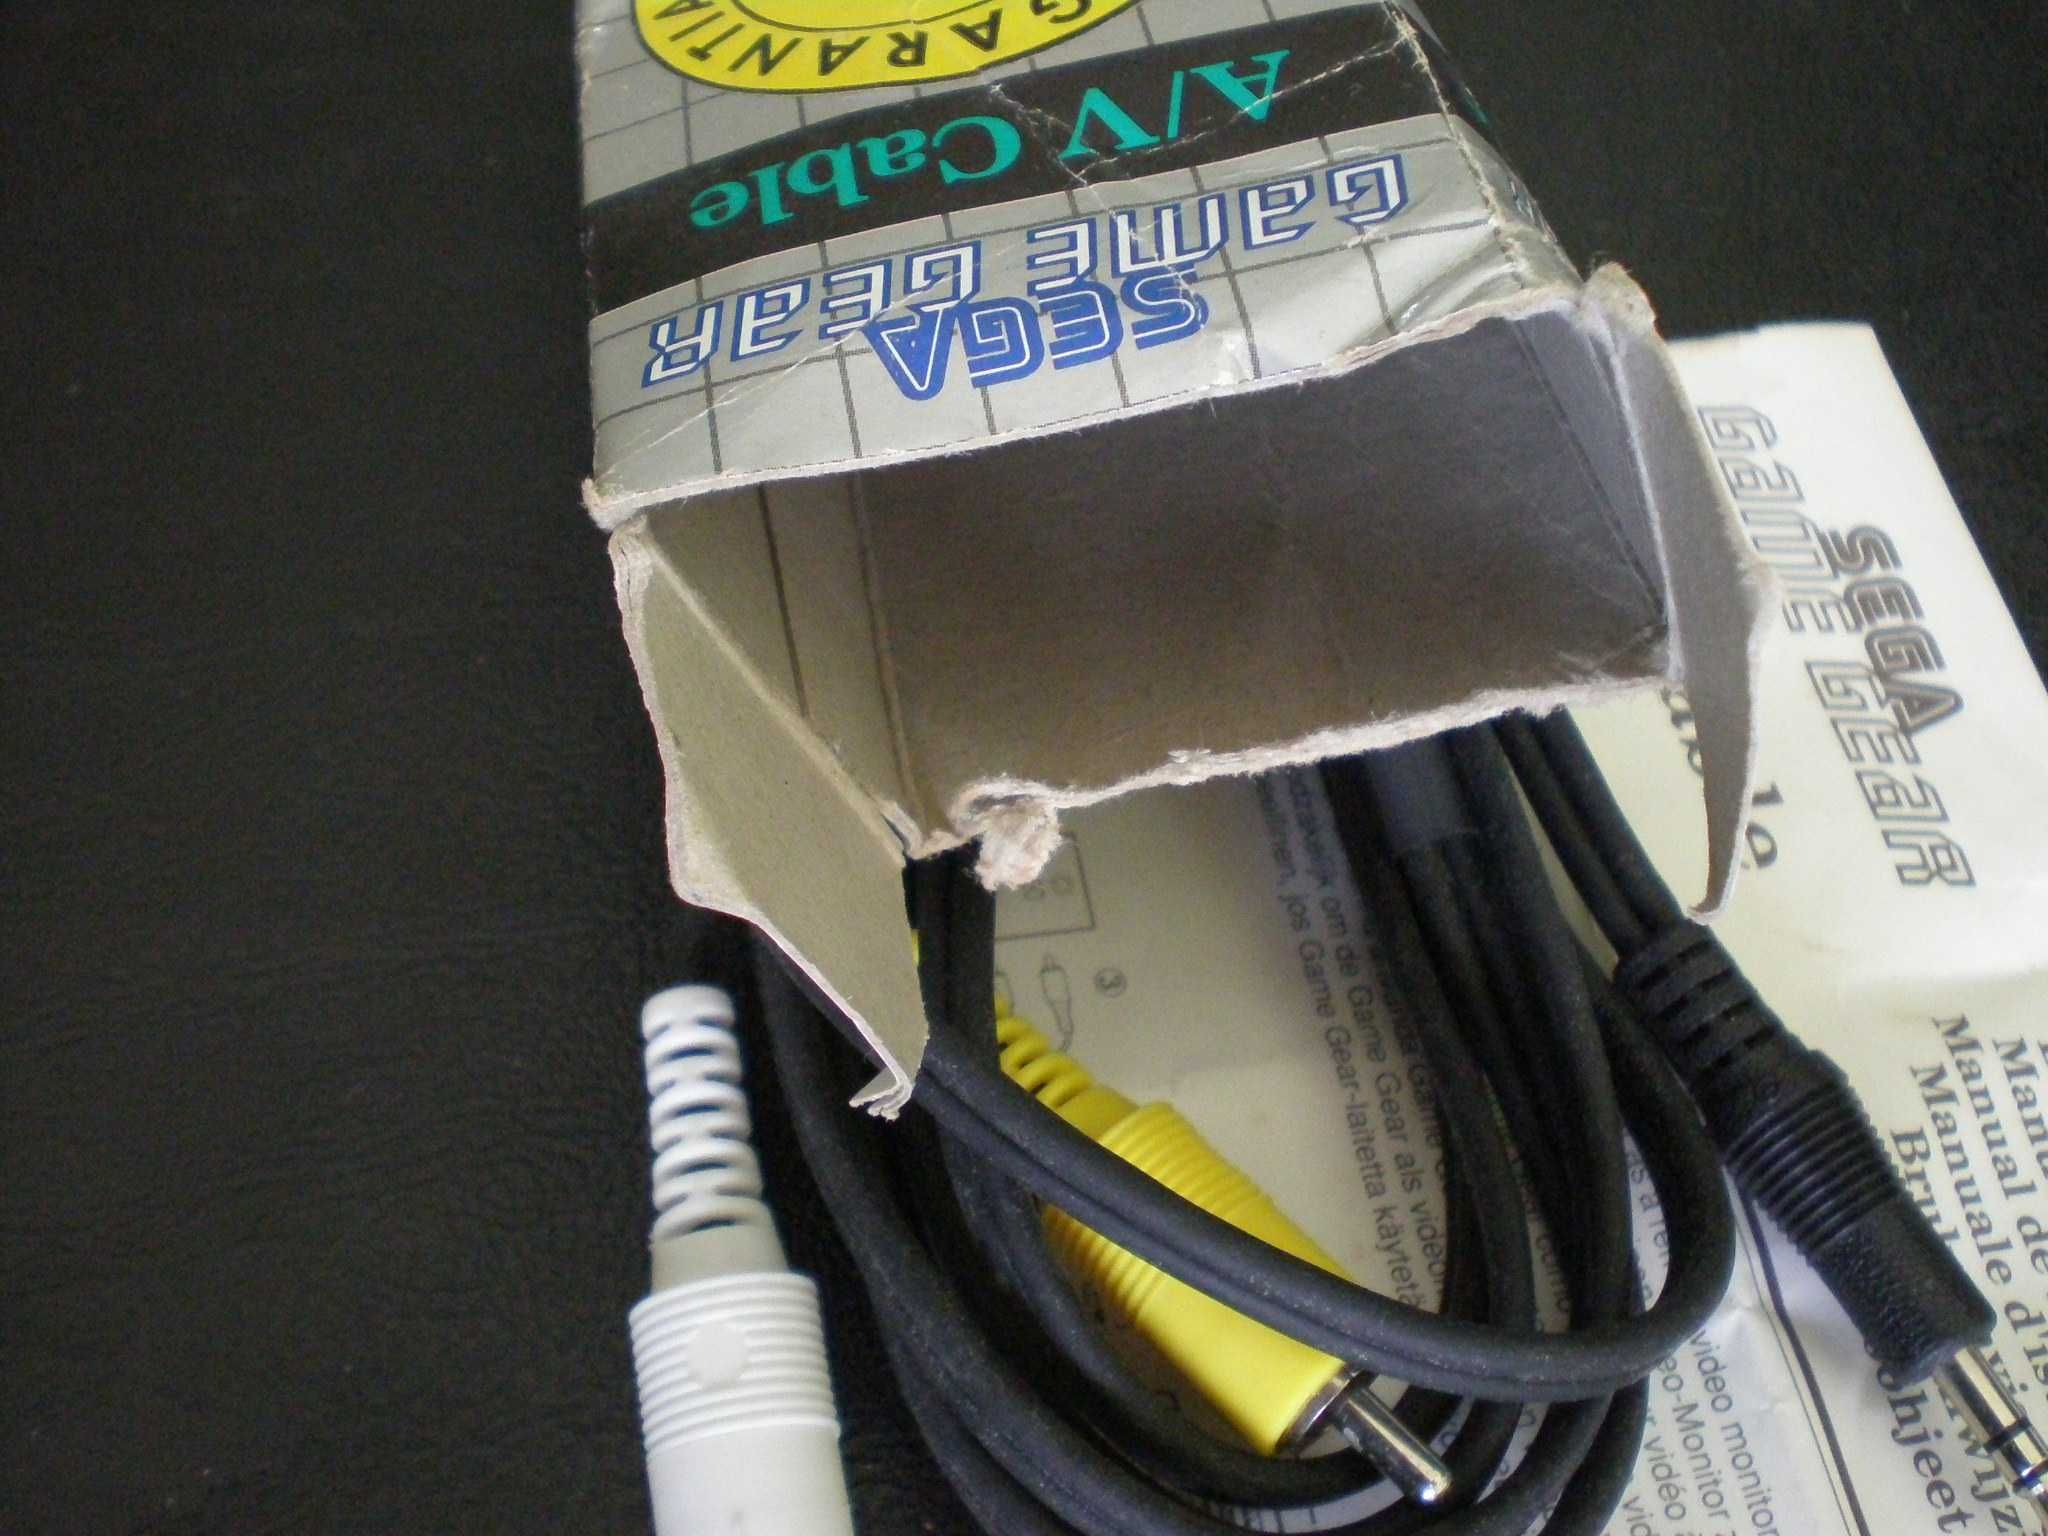 Sega GameGear - AV Cable